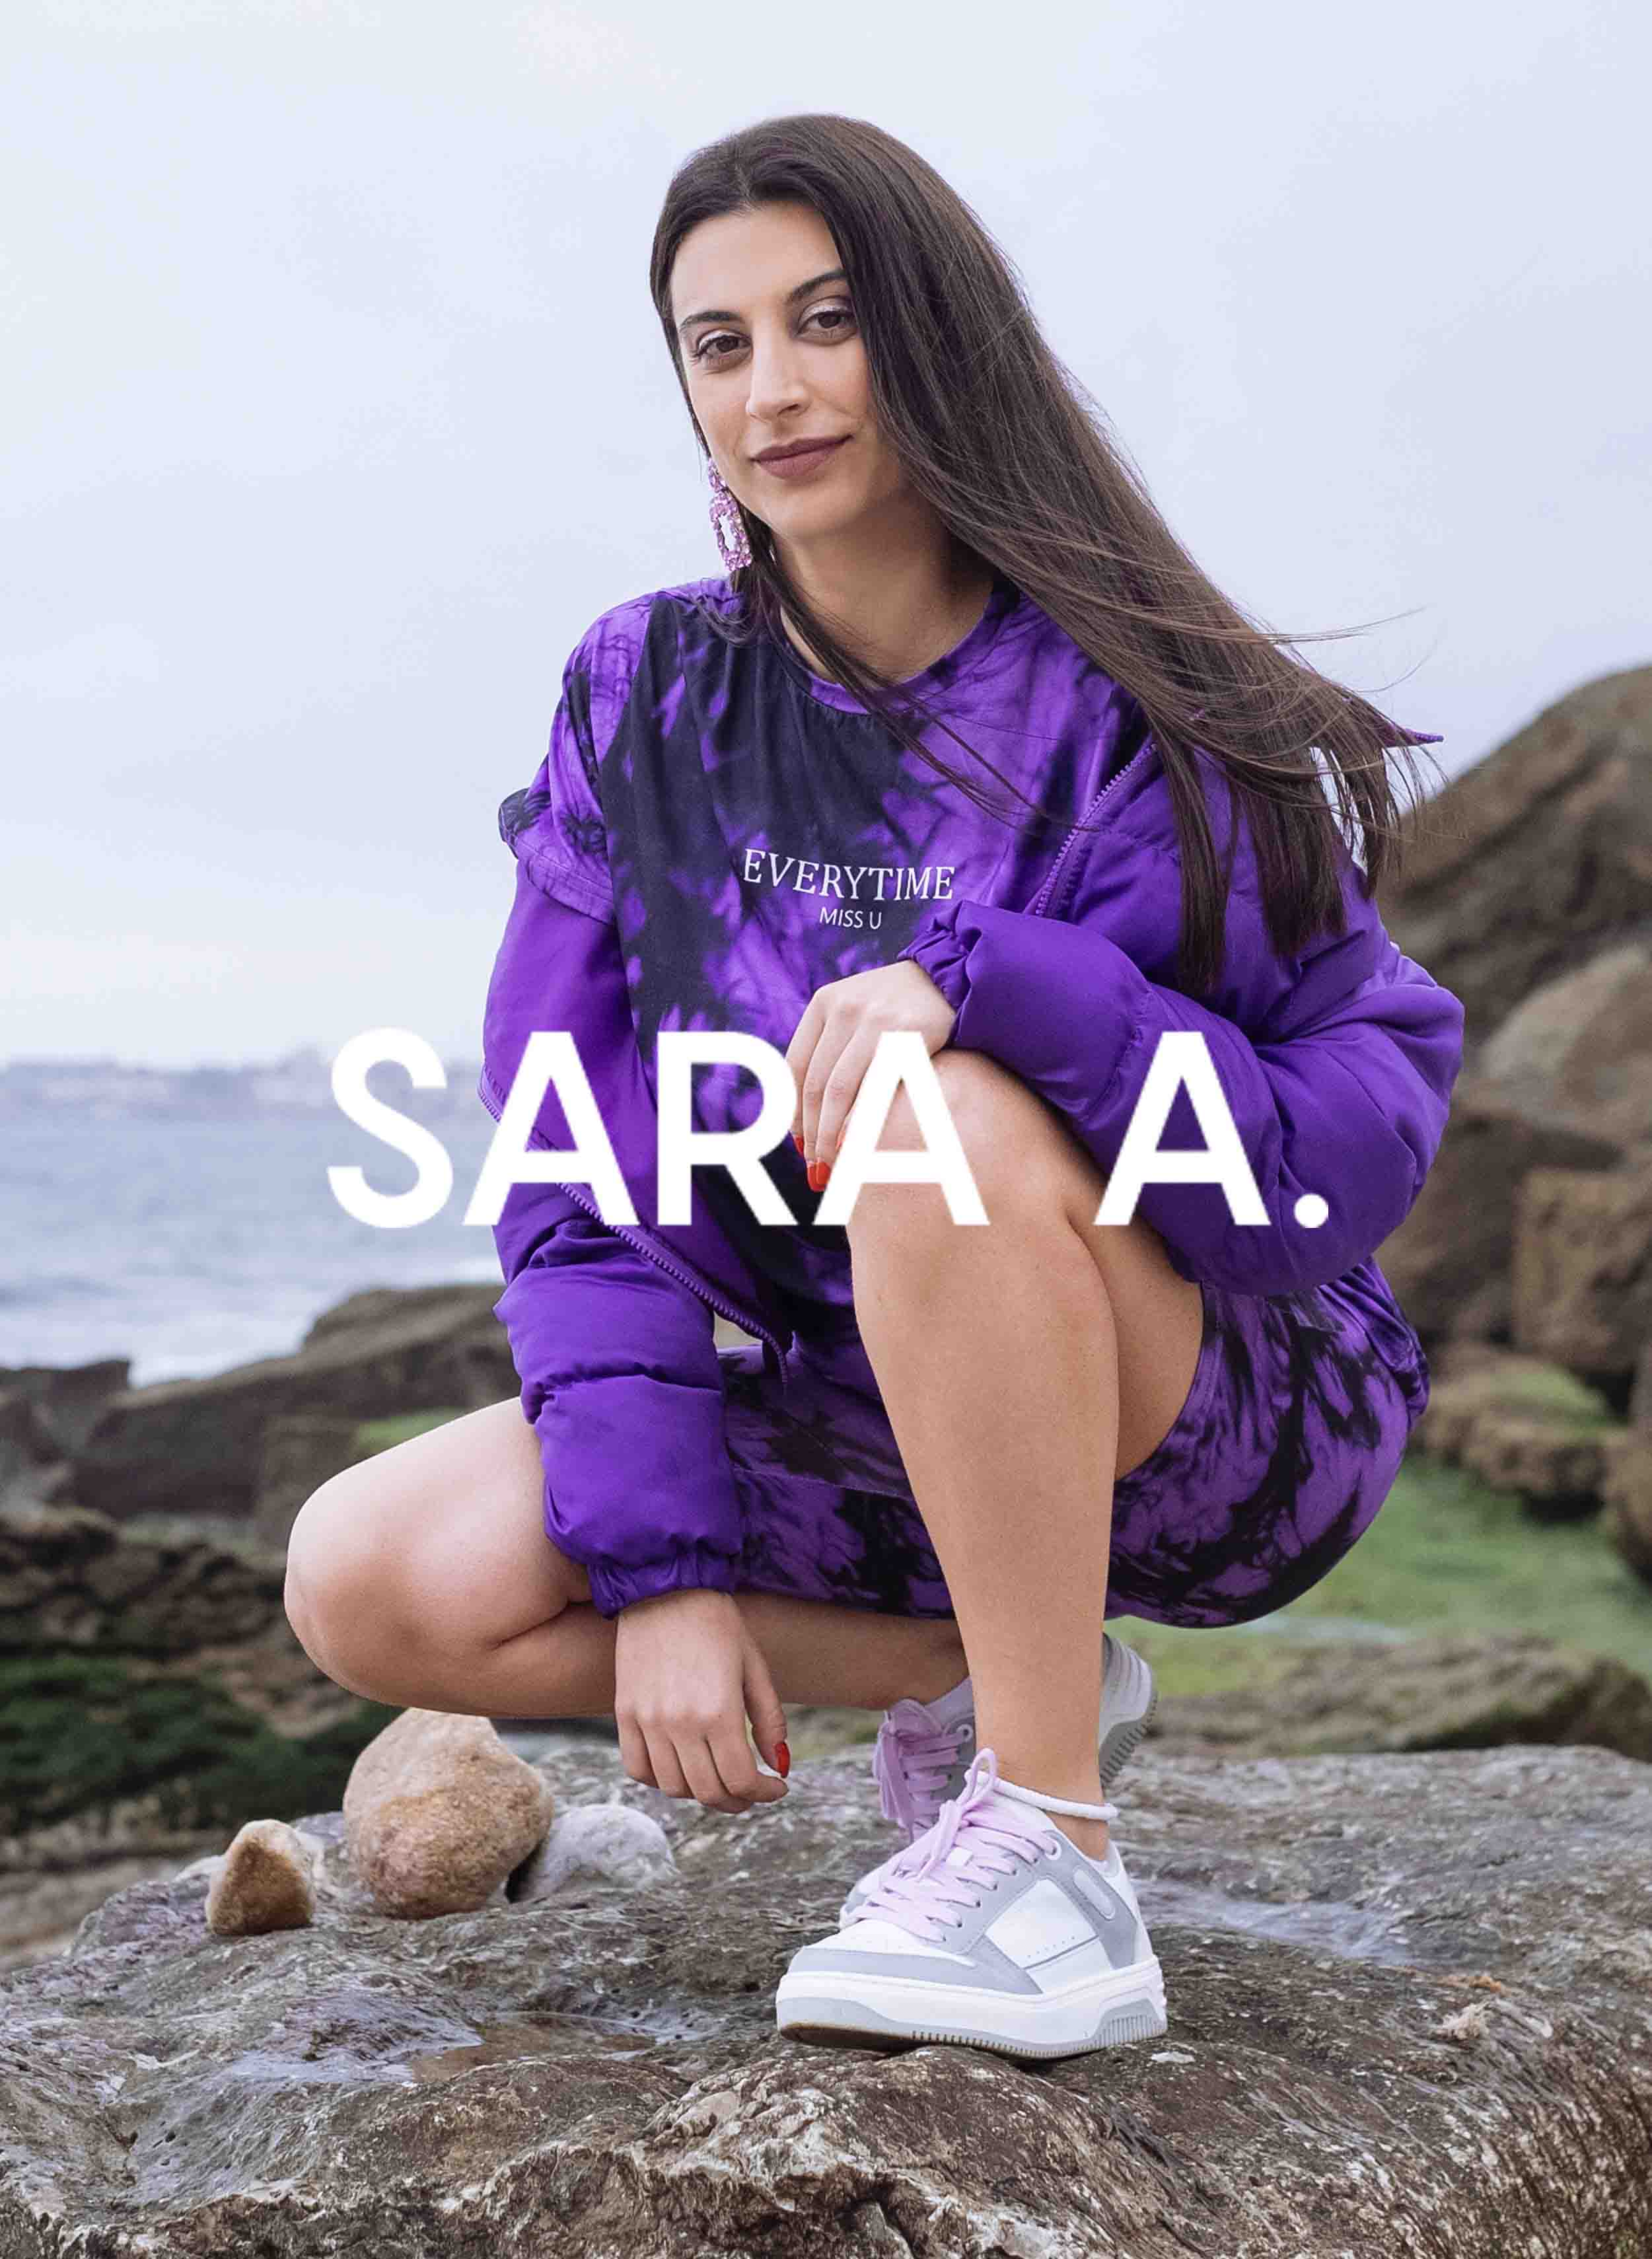 Sara trägt ein lilafarbenes Hemd, gepaart mit Diverge sneakers, zeigt ihre maßgefertigten Schuhe und fördert die soziale Wirkung durch das IMAGINE-Projekt.